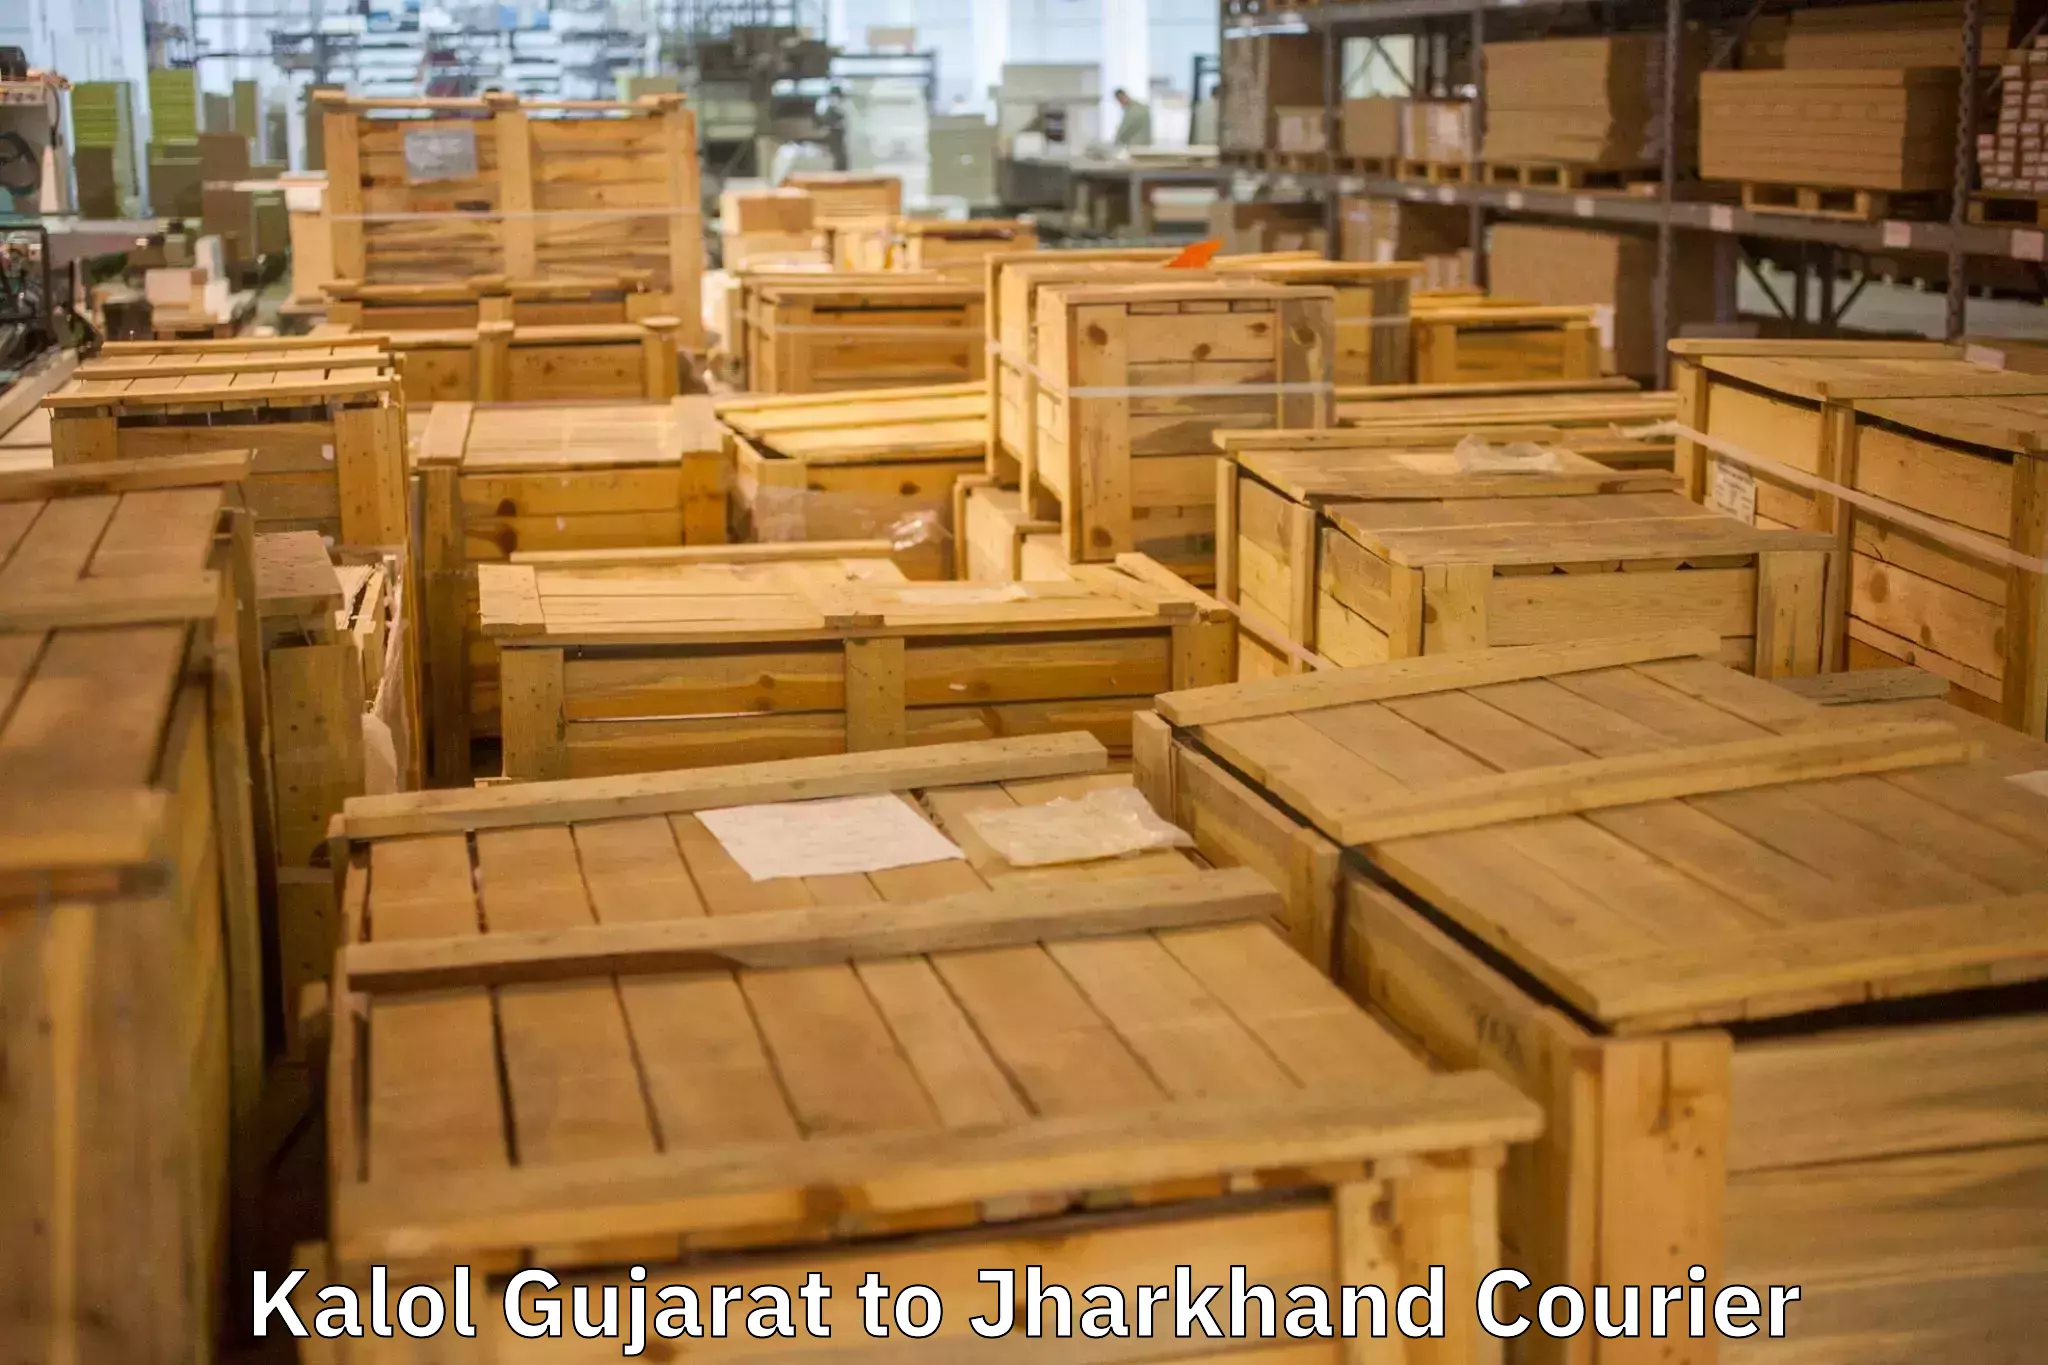 Stress-free household moving Kalol Gujarat to Adityapur